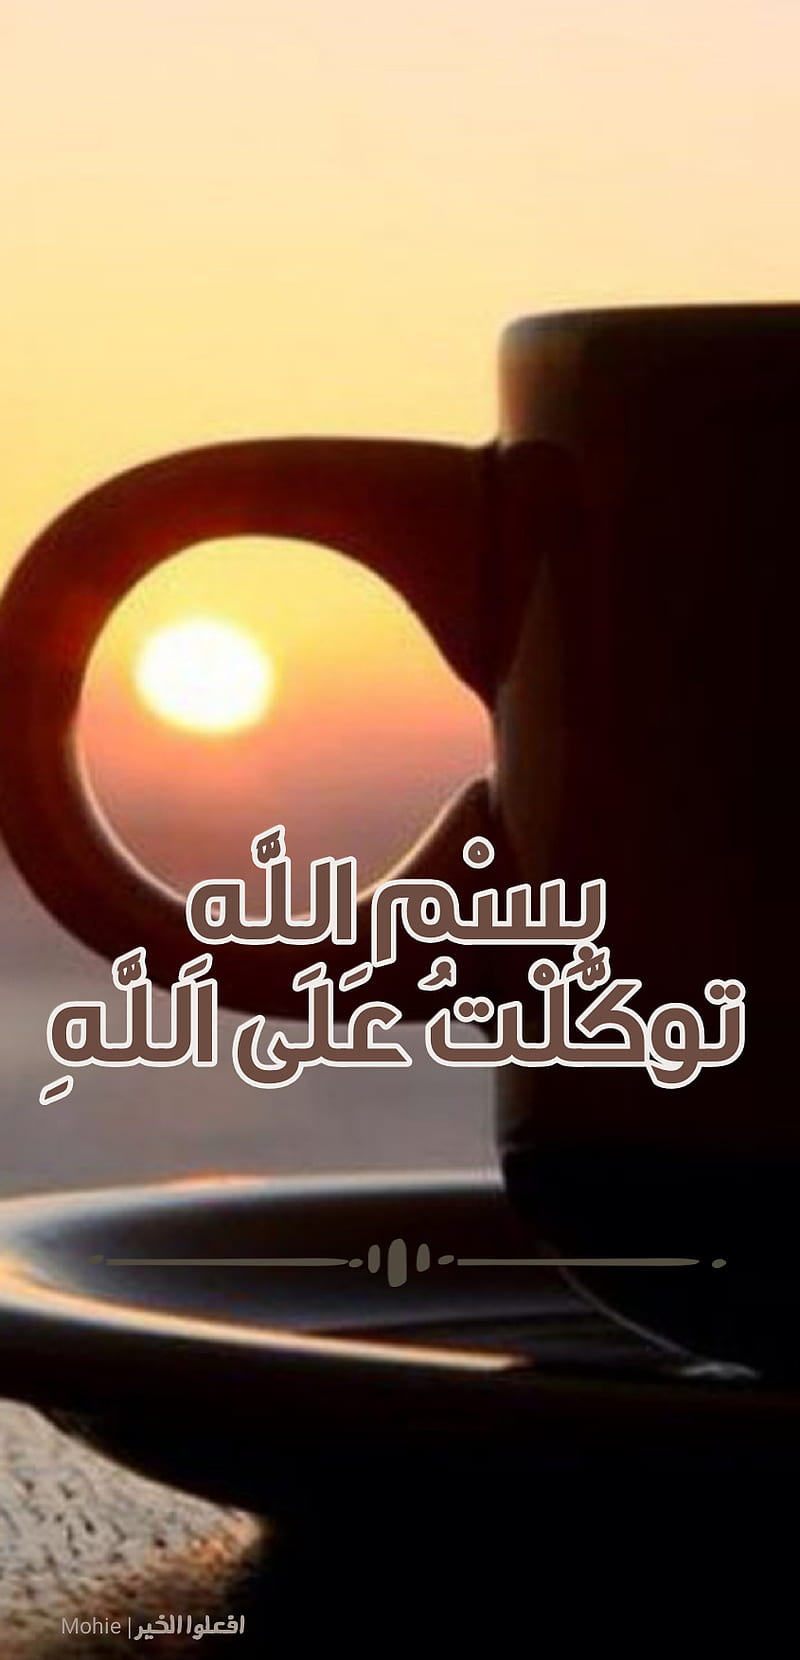 Good morning, good morning, islam, islamic, muslim, arabic, arab ...